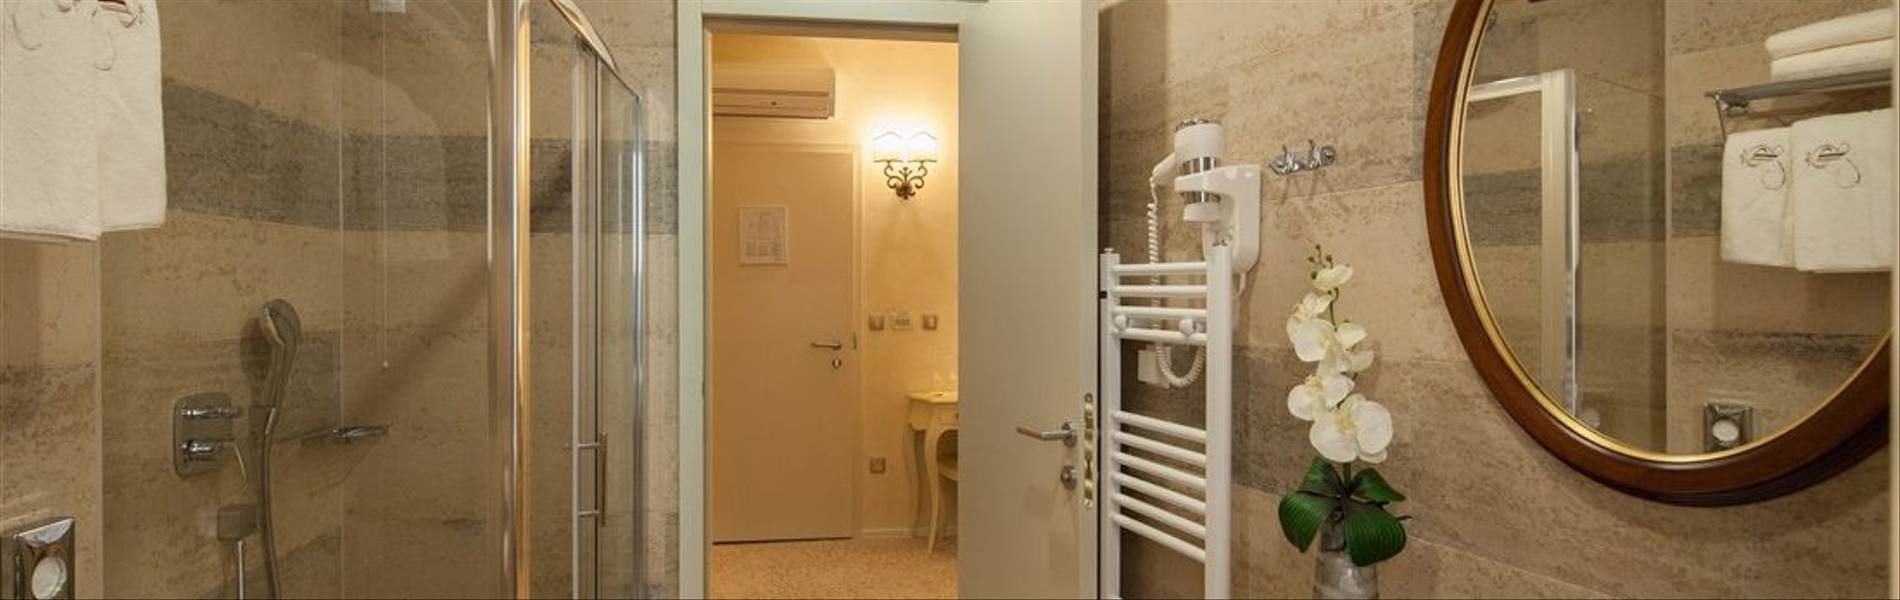 Bathroom-Heritage-Life-Palace-Completely-Croatia.jpg